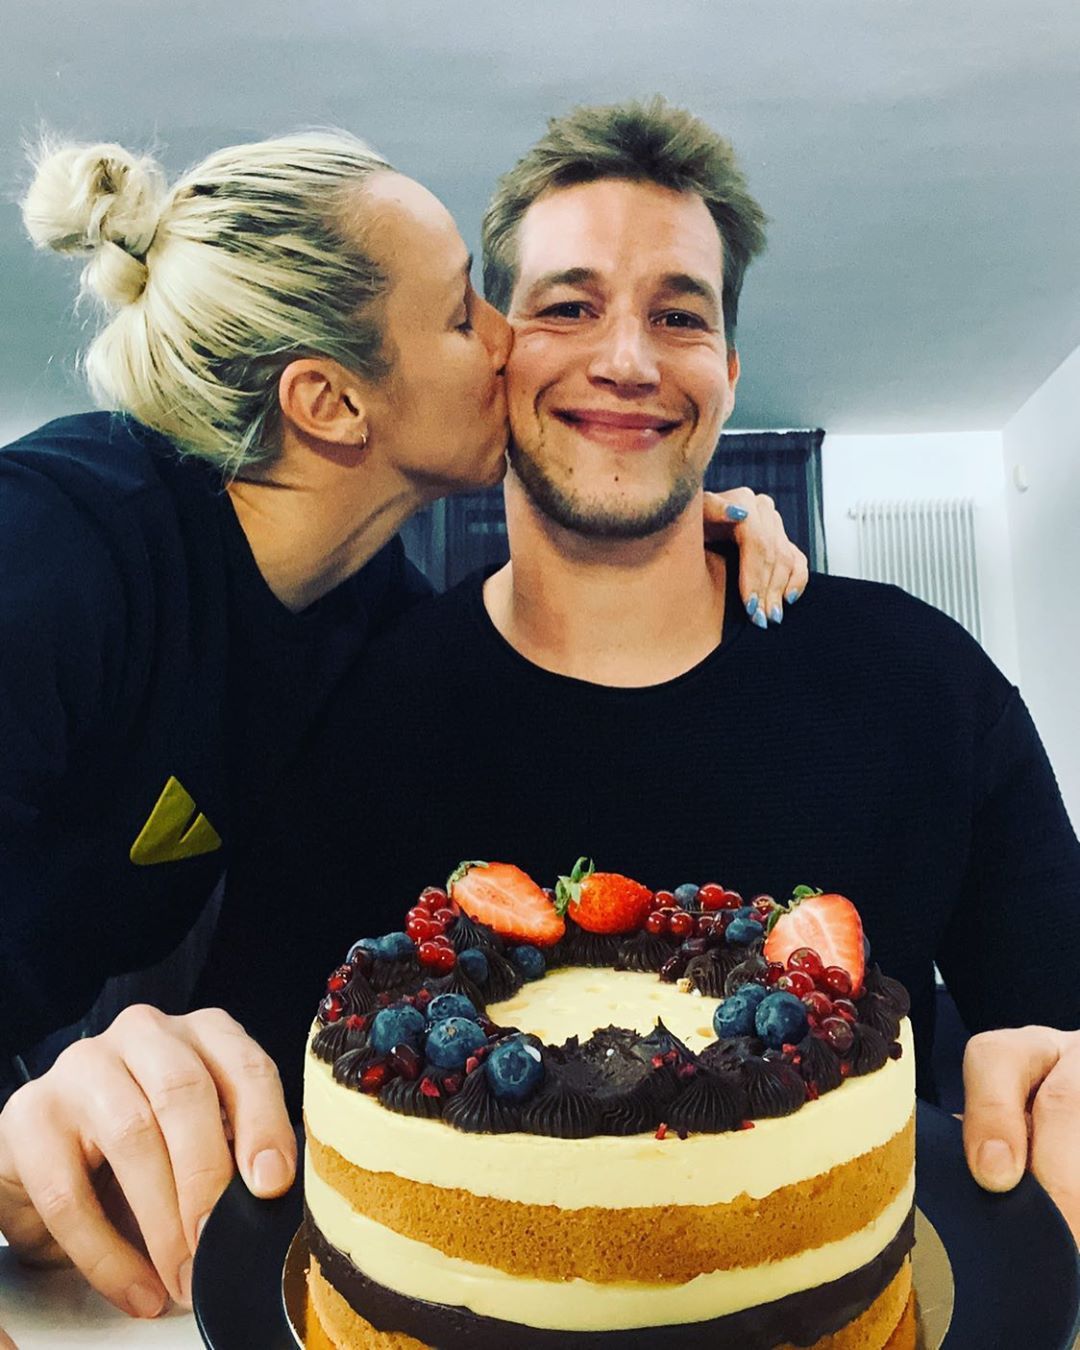 Jansikot a szülinapján tortával köszöntötte szerelme /Fotó: Instagram